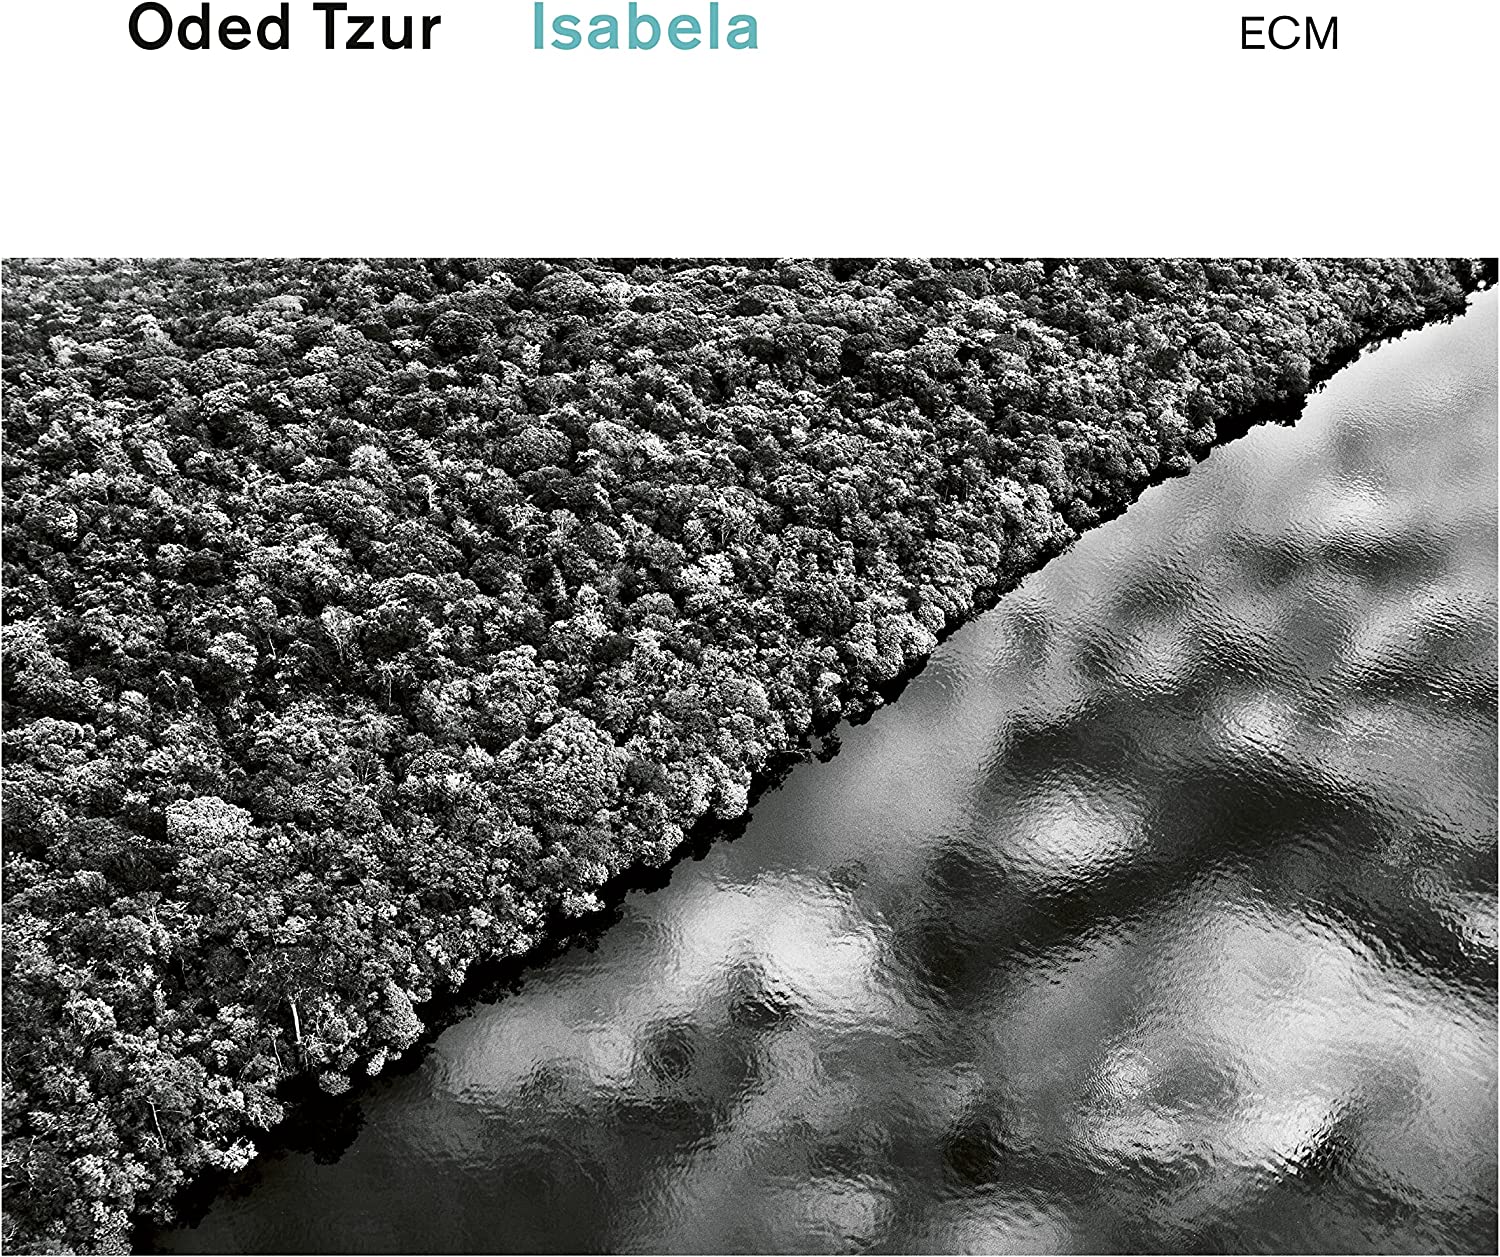 Isabela | Oded Tzur image